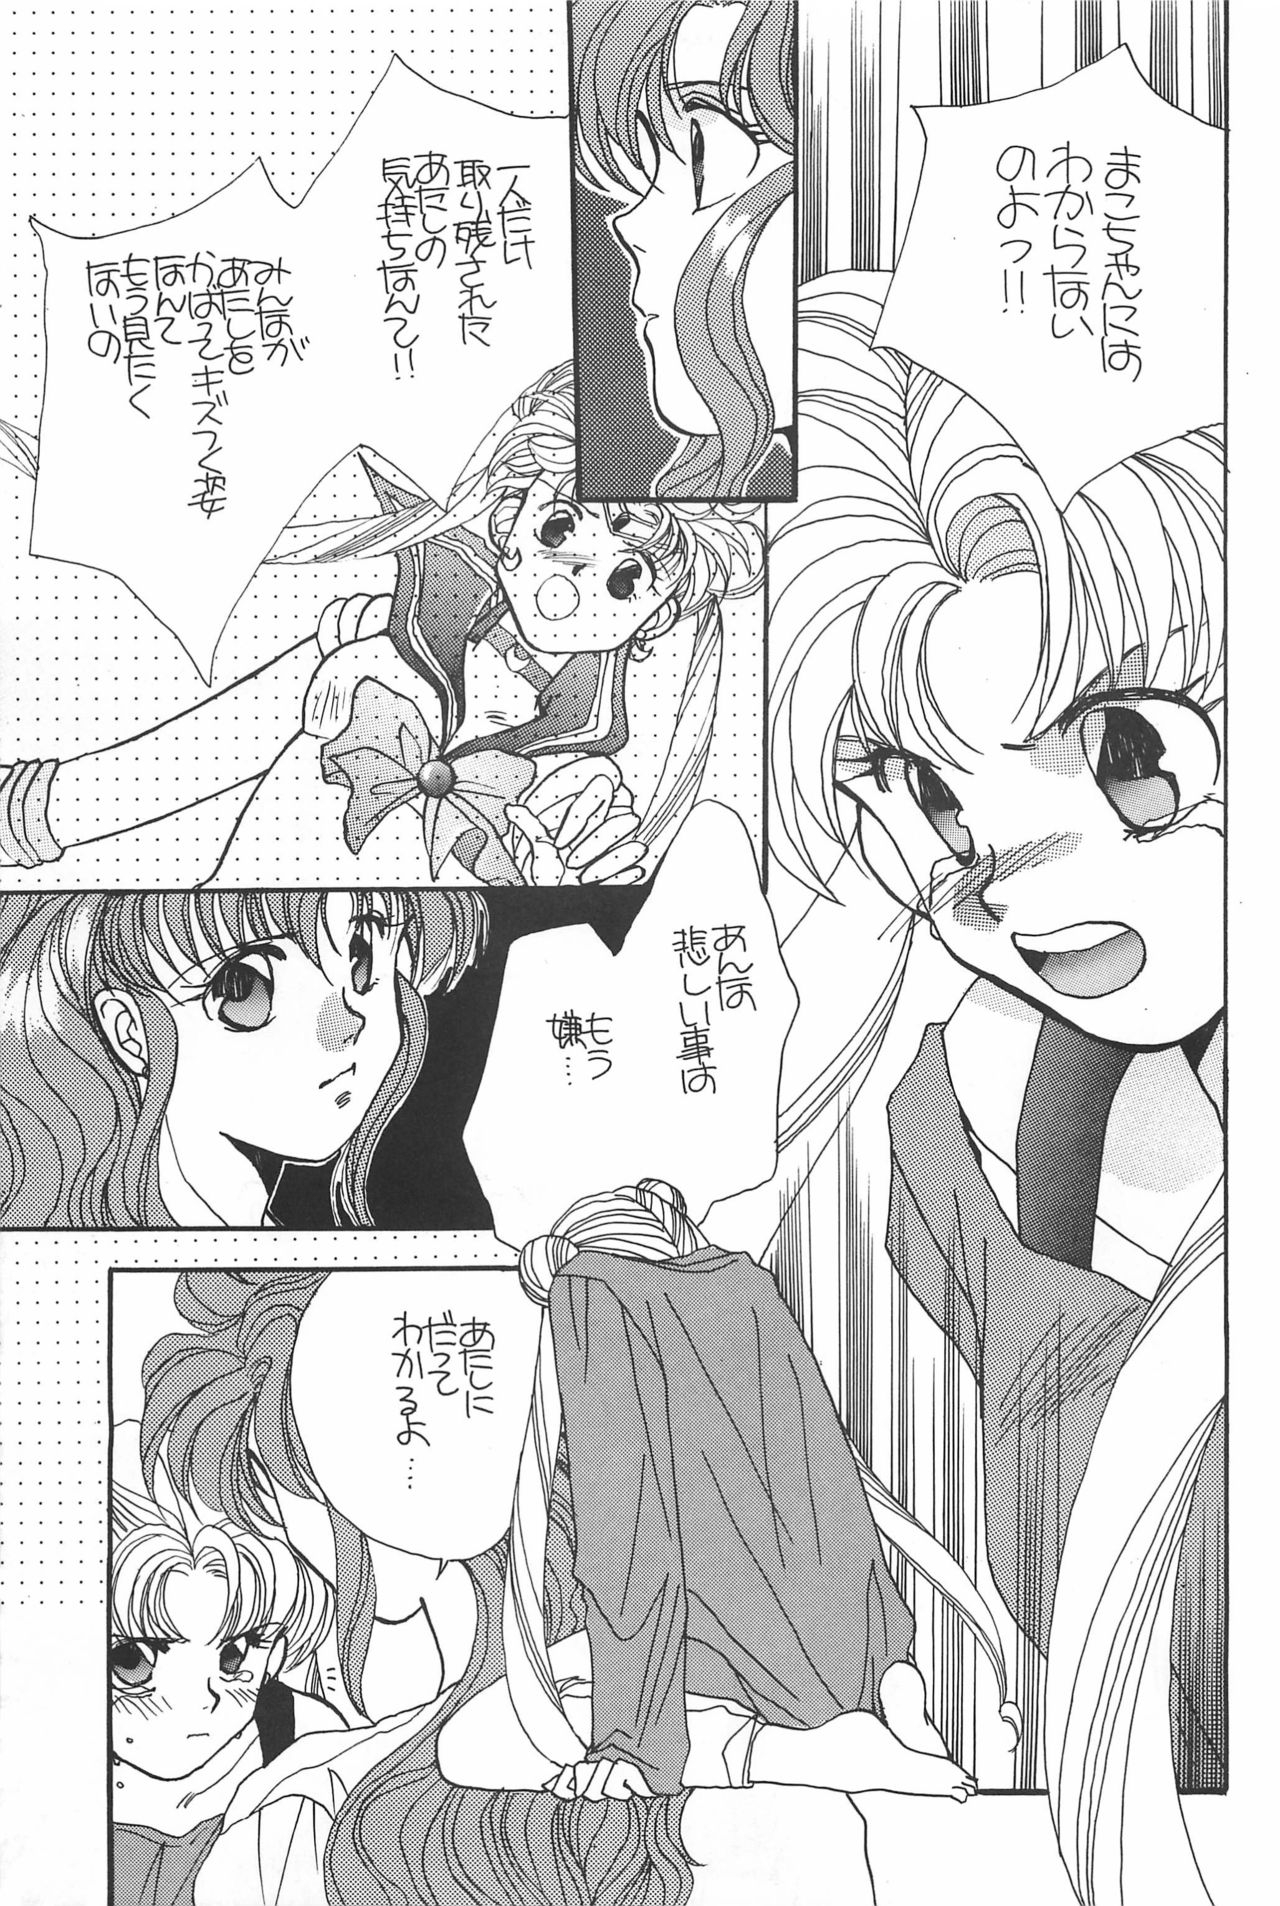 [Hello World (Muttri Moony)] Kaze no You ni Yume no You ni - Sailor Moon Collection (Sailor Moon) 160